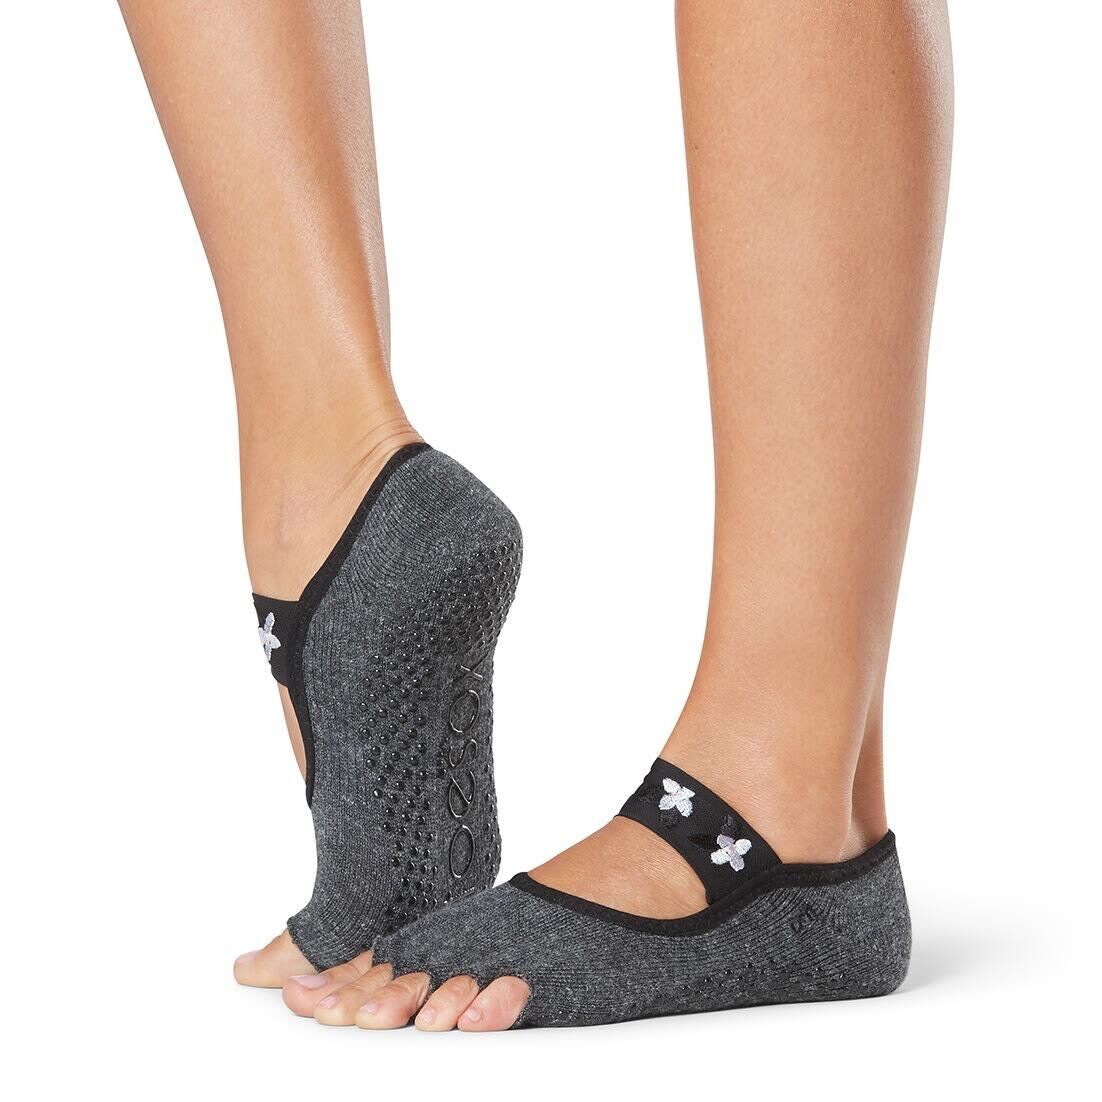 MYGA Yoga Socks 3 Sizes Small, Medium, Large, Extra Large 